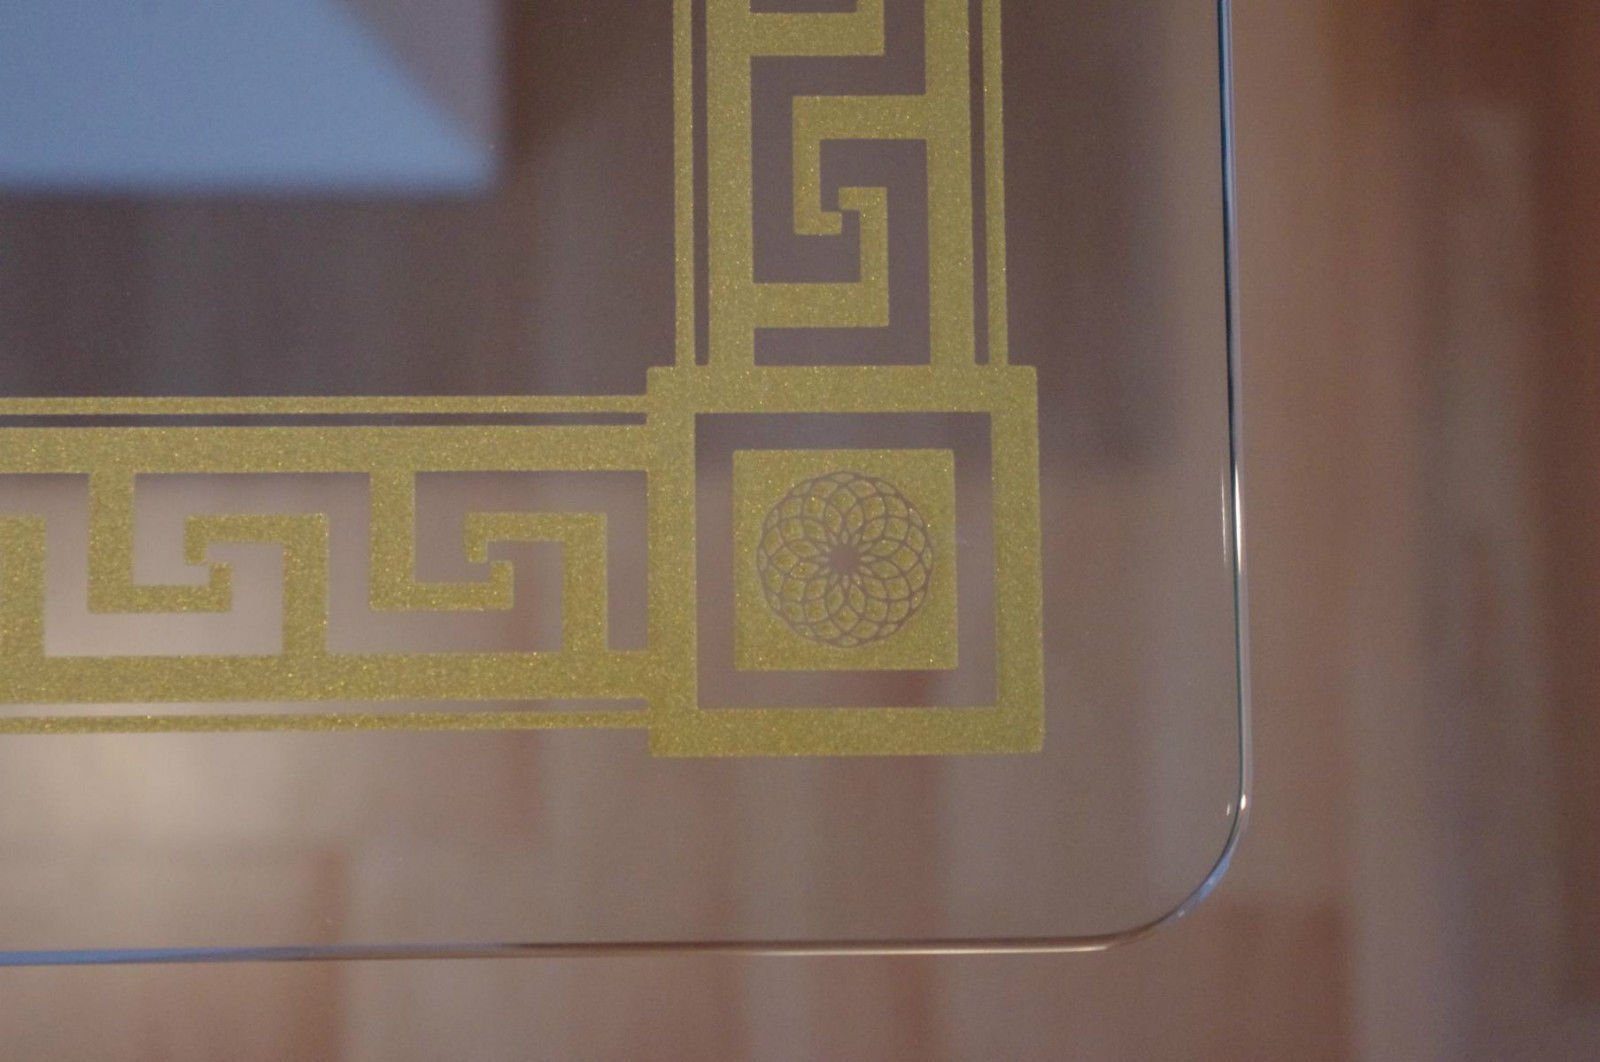 Säulen-Esstisch Barocktisch Glastisch Antikes Küchentisch Wohndesign Antik Medusa Tafeltisch Esstisch